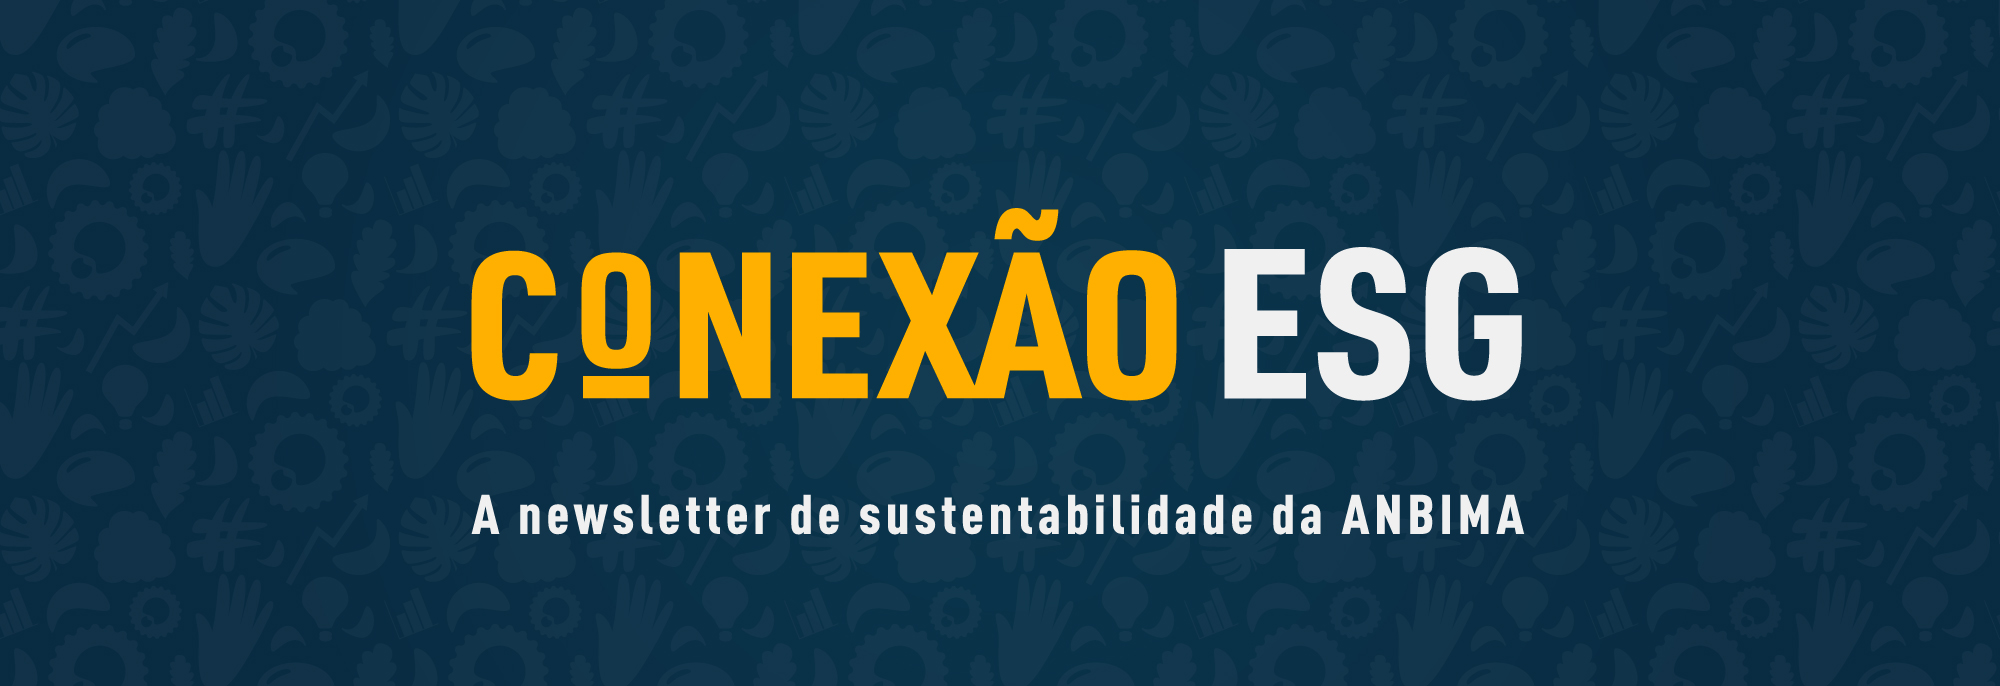 header-conexao-ESG .jpg